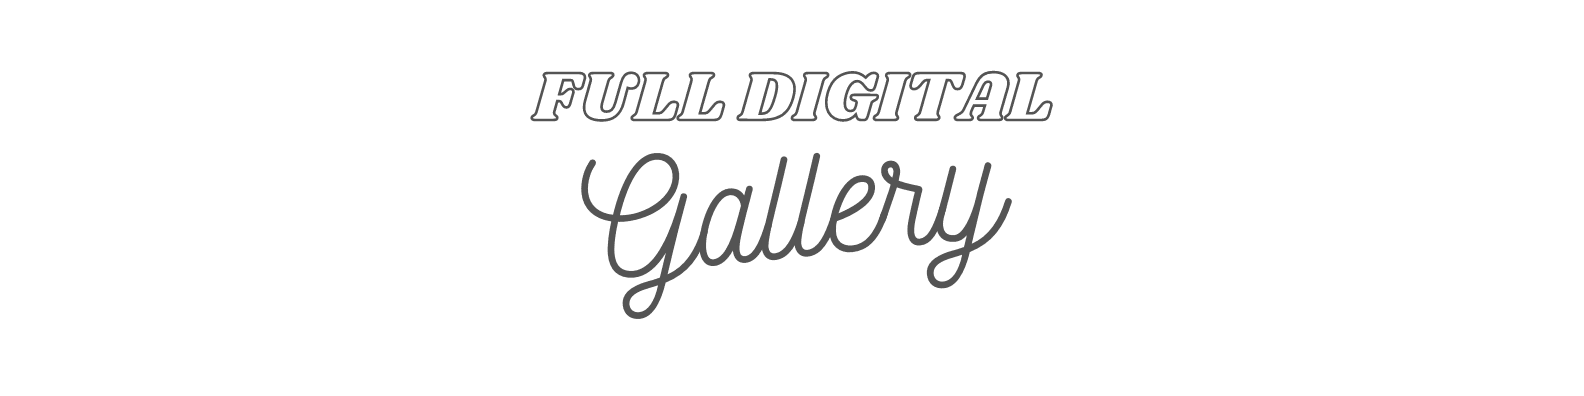 full digital gallery